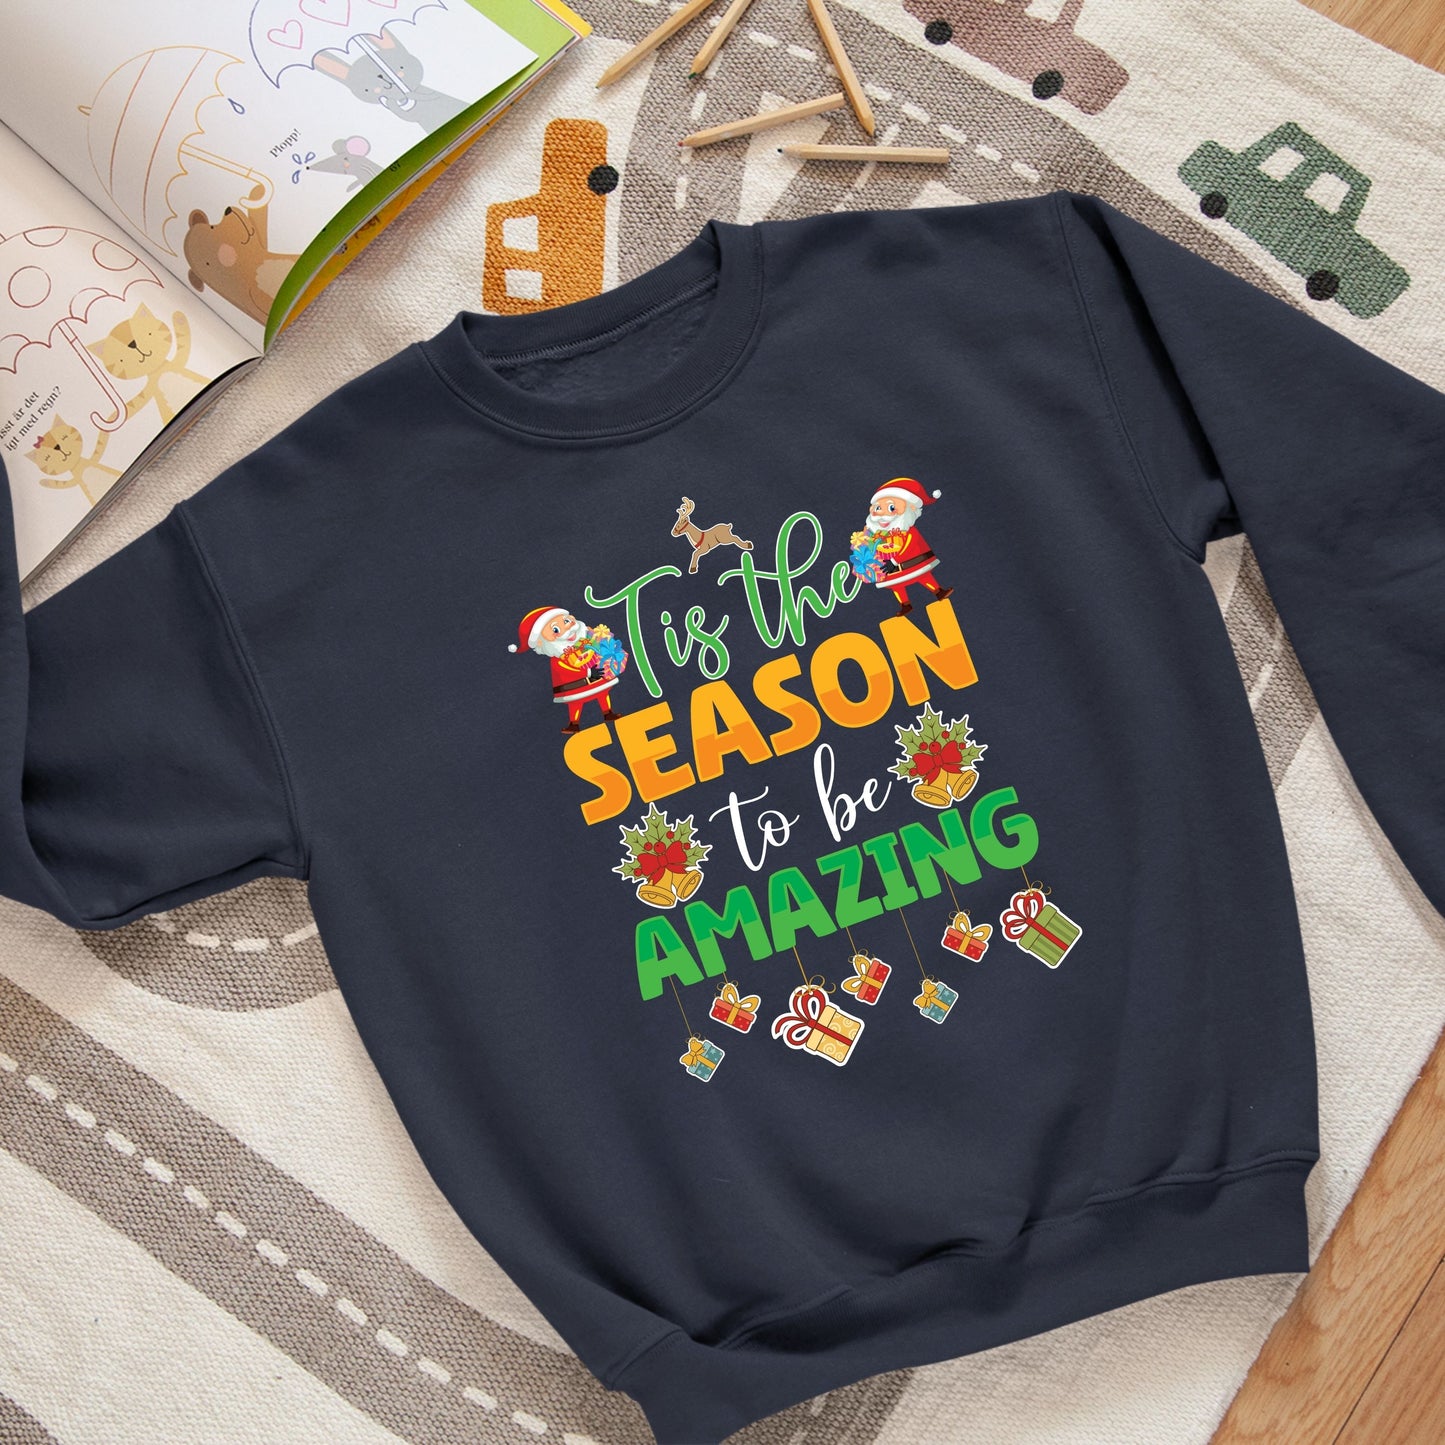 Tis the Season to Be Amazing, Christmas Long Sleeves, Christmas Crewneck For Youth, Christmas Sweater, Christmas Sweatshirt, Christmas Gift